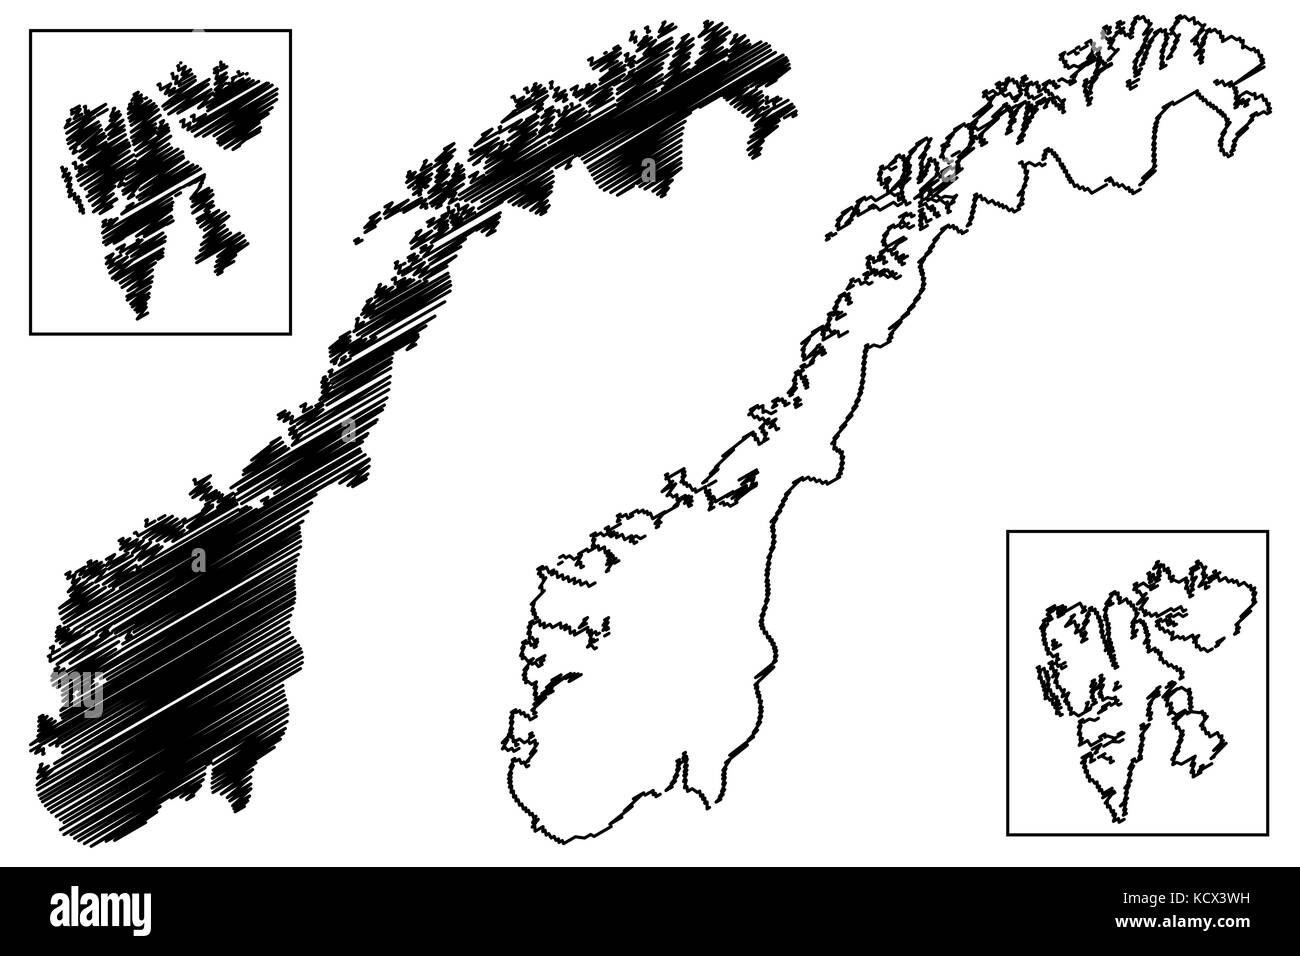 Norwegen karte Vektor-illustration, kritzeln Skizze Norwegen (Svalbard) Stock Vektor